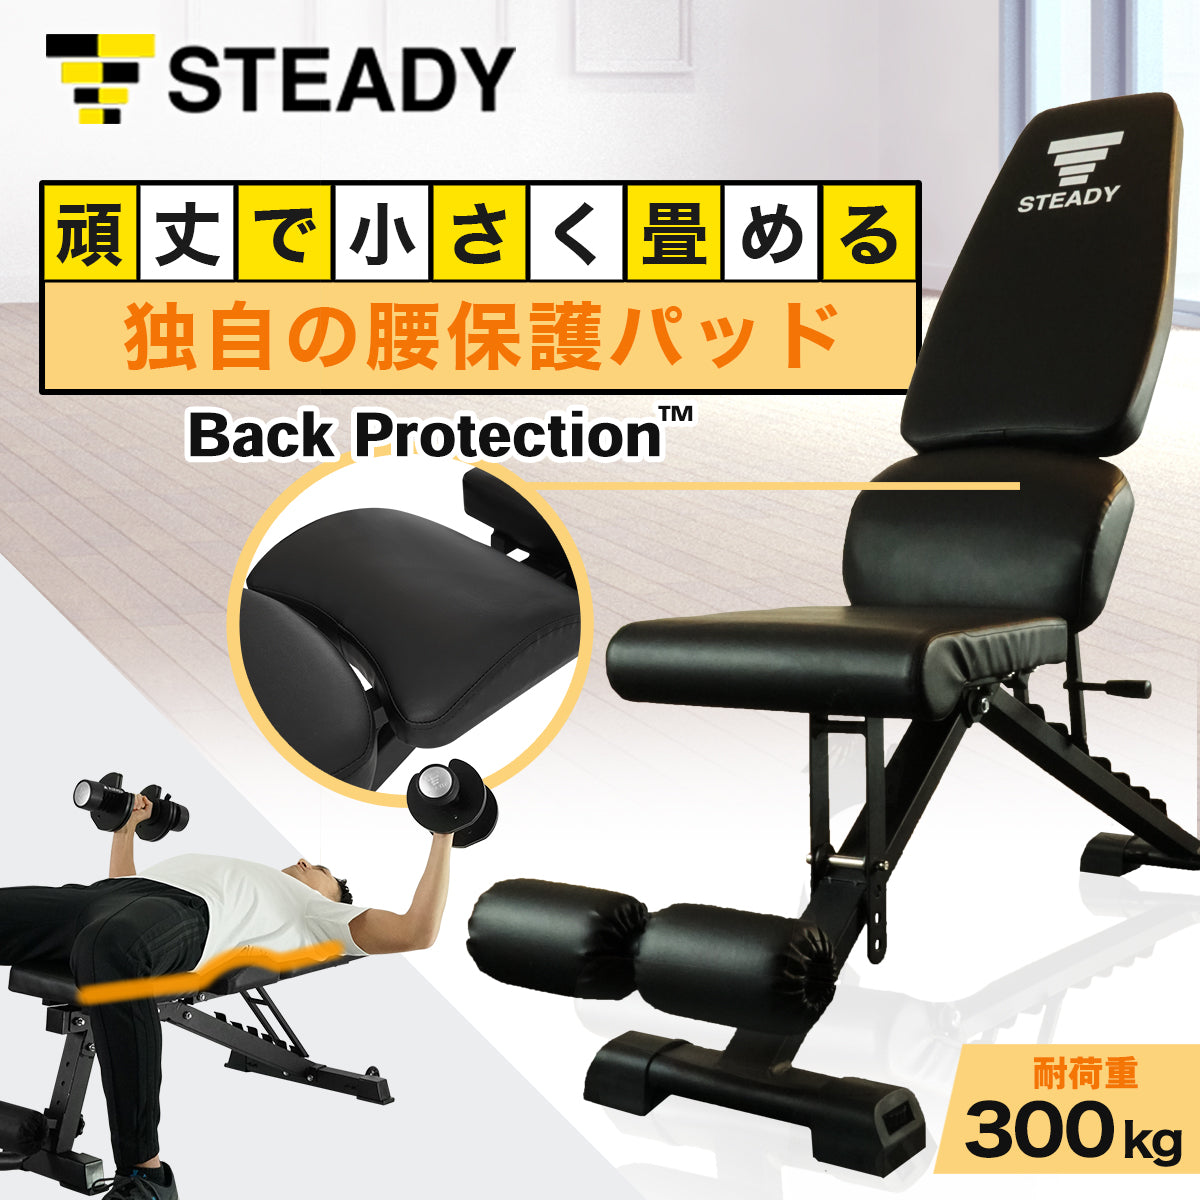 トレーニングベンチ(スタンダードモデル) Back Protection【インク